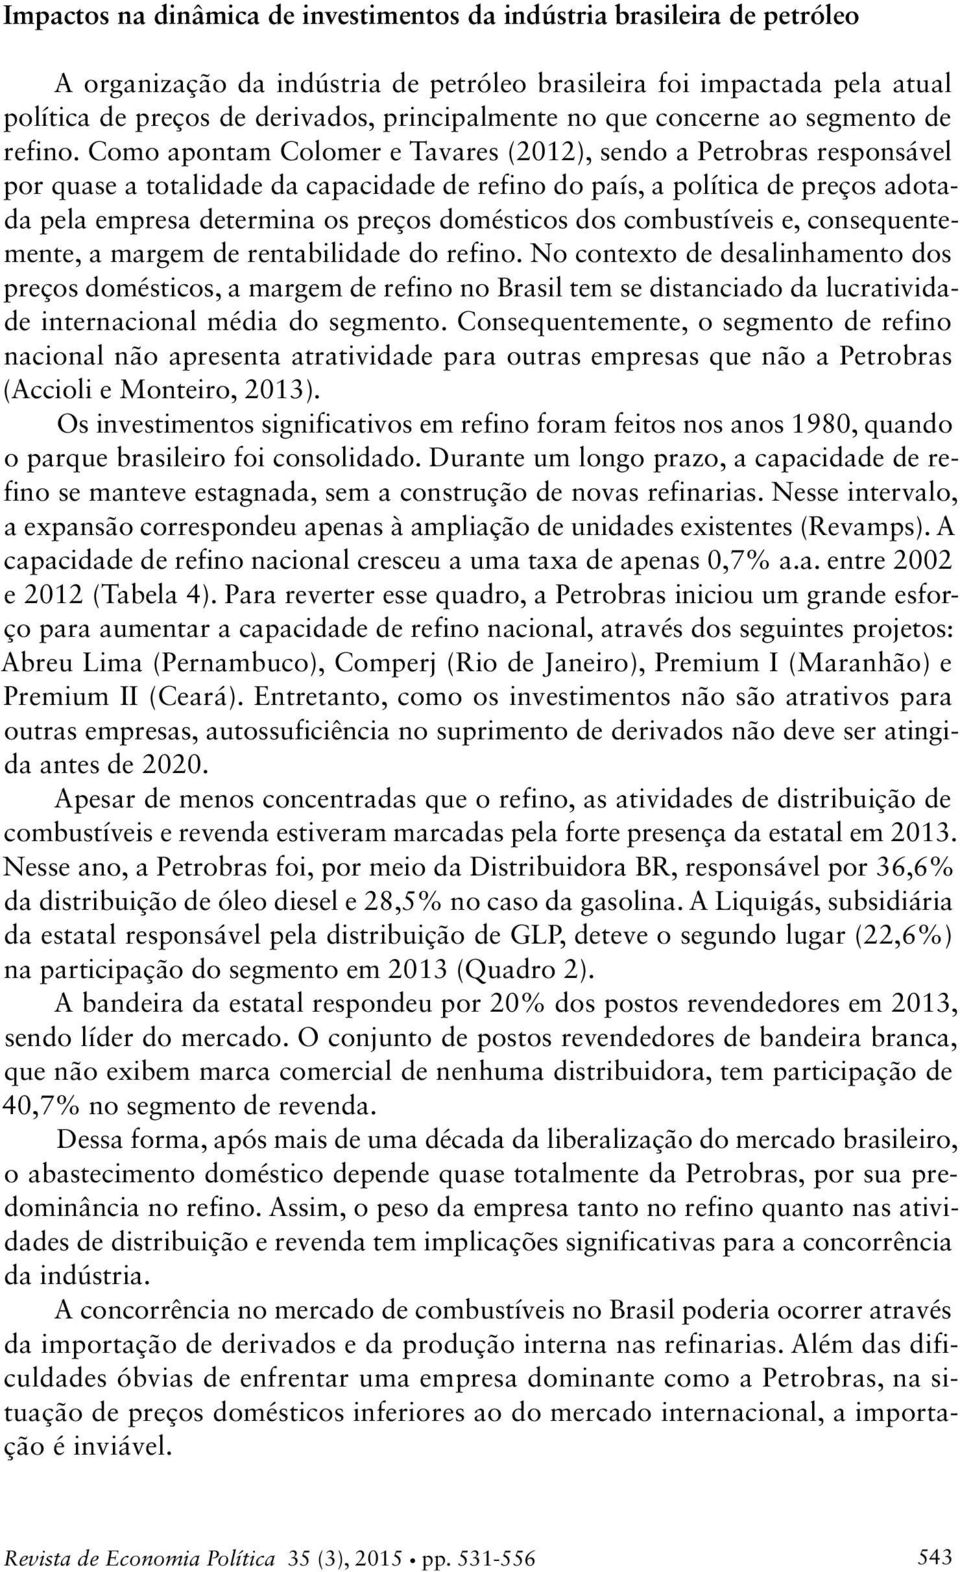 Como apontam Colomer e Tavares (212), sendo a Petrobras responsável por quase a totalidade da capacidade de refino do país, a política de preços adotada pela empresa determina os preços domésticos